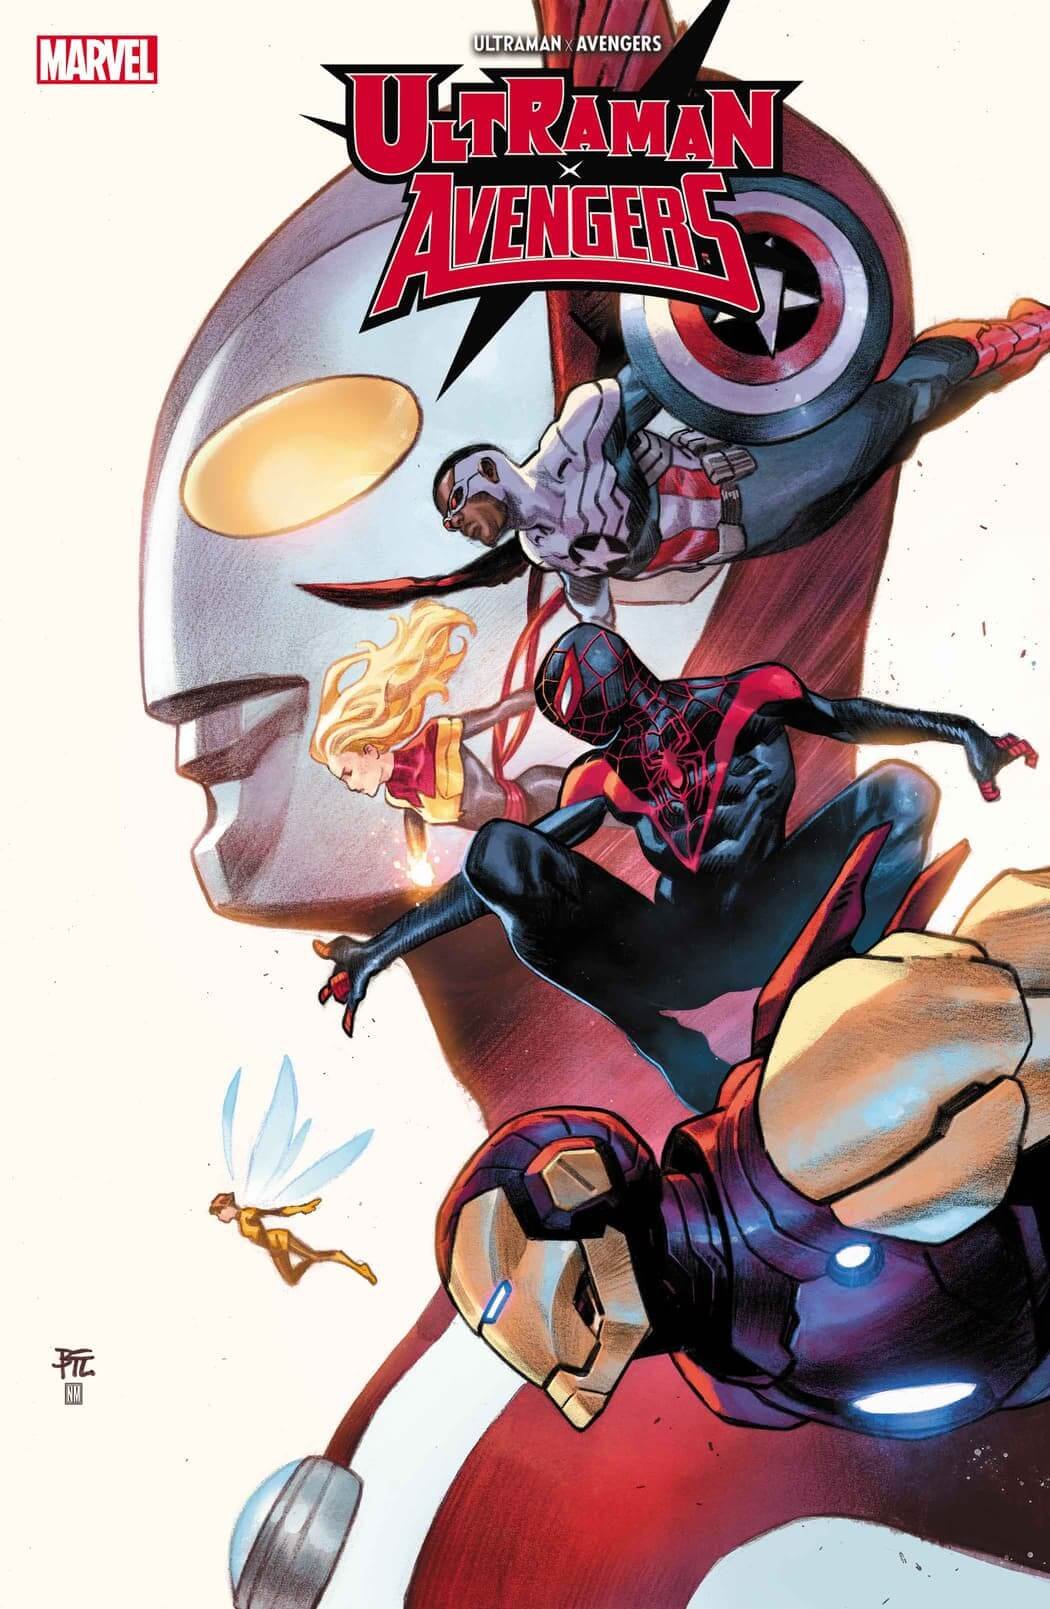 Cover di Ultraman X Avengers 1 di Dike Ruan